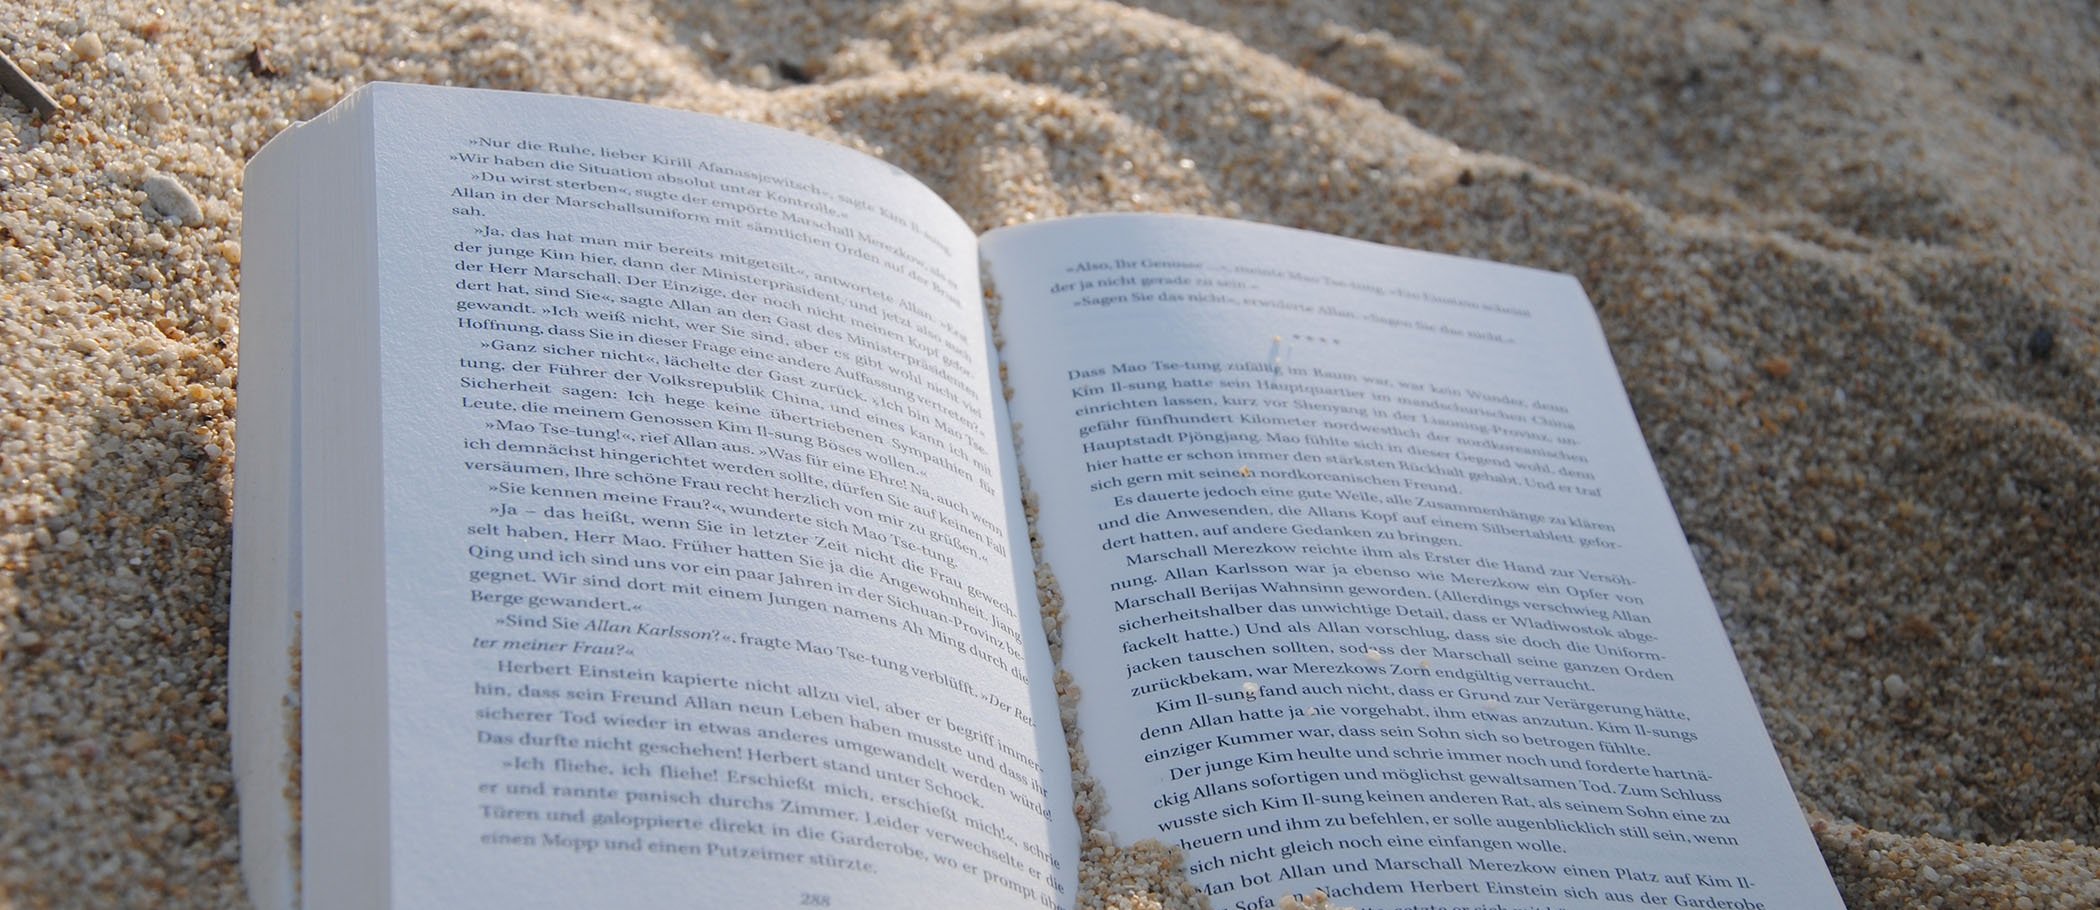 Un llibre sobre sorra de platja